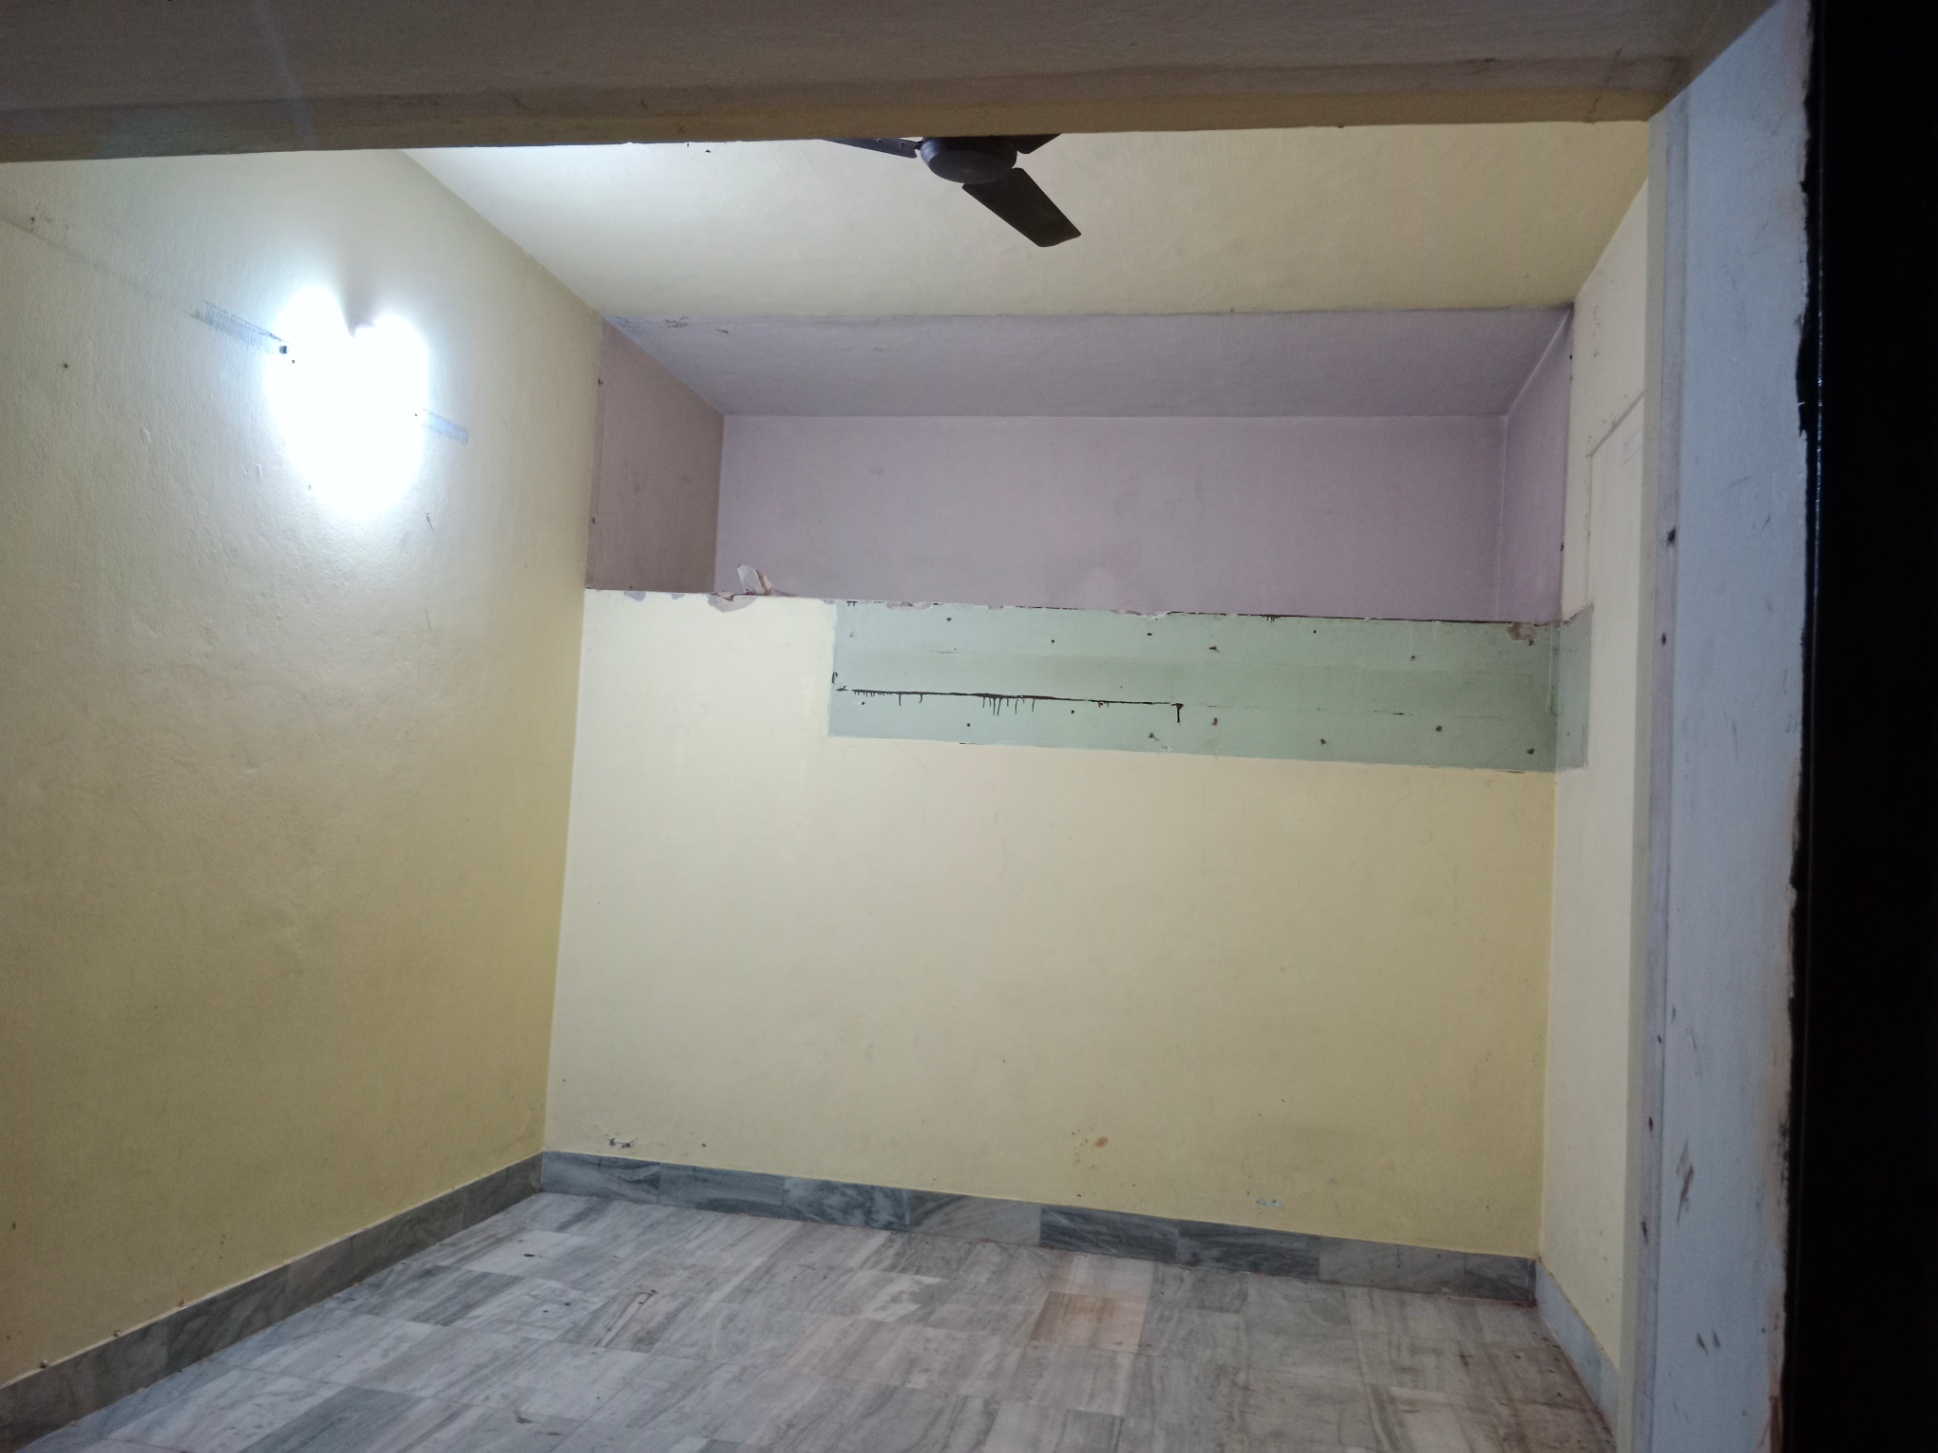 Rent Office/ Shop, 200 sq ft carpet area, UnFurnished for rent @Kharvel nagar 